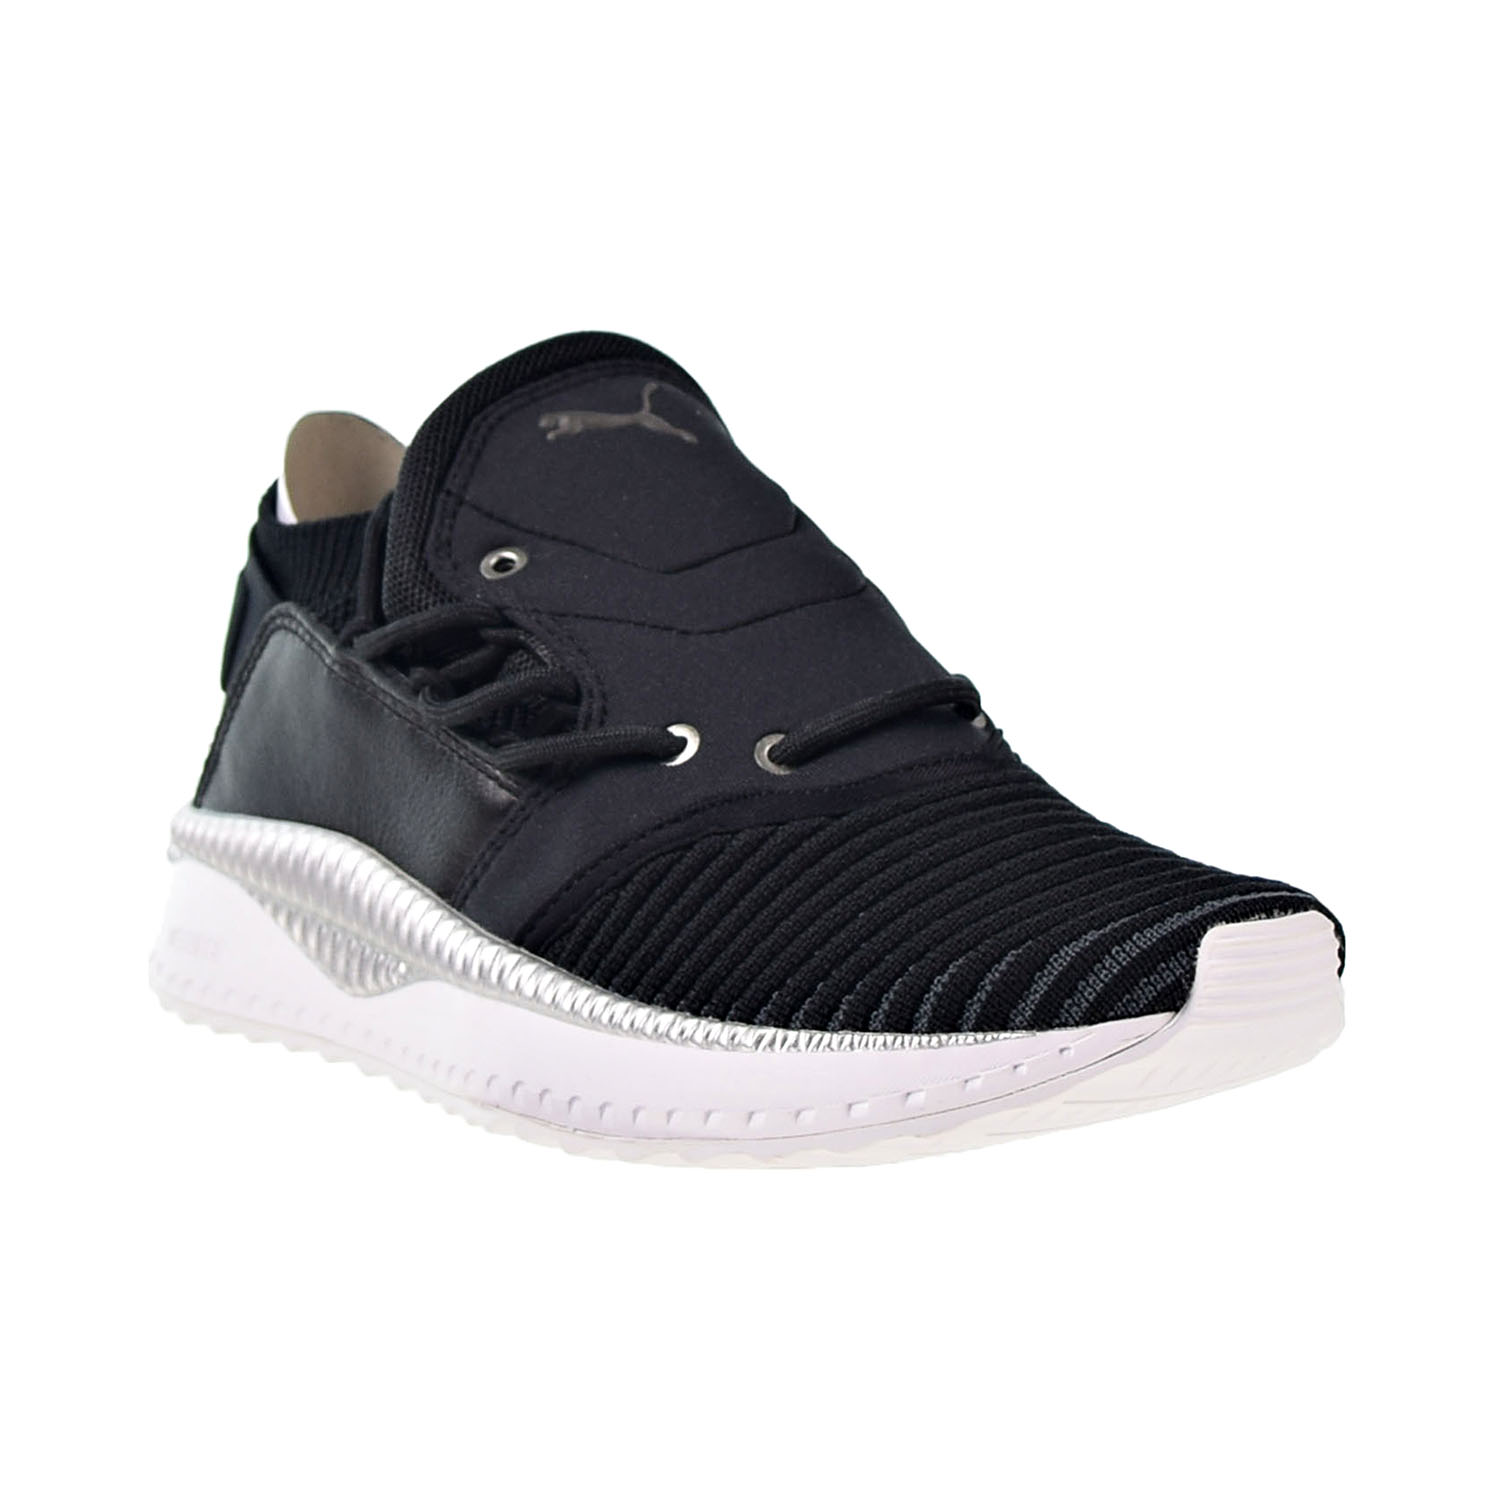 Puma Tsugi Shinsei Evoknit Men's Shoes Black-White 365491-05 - image 2 of 6